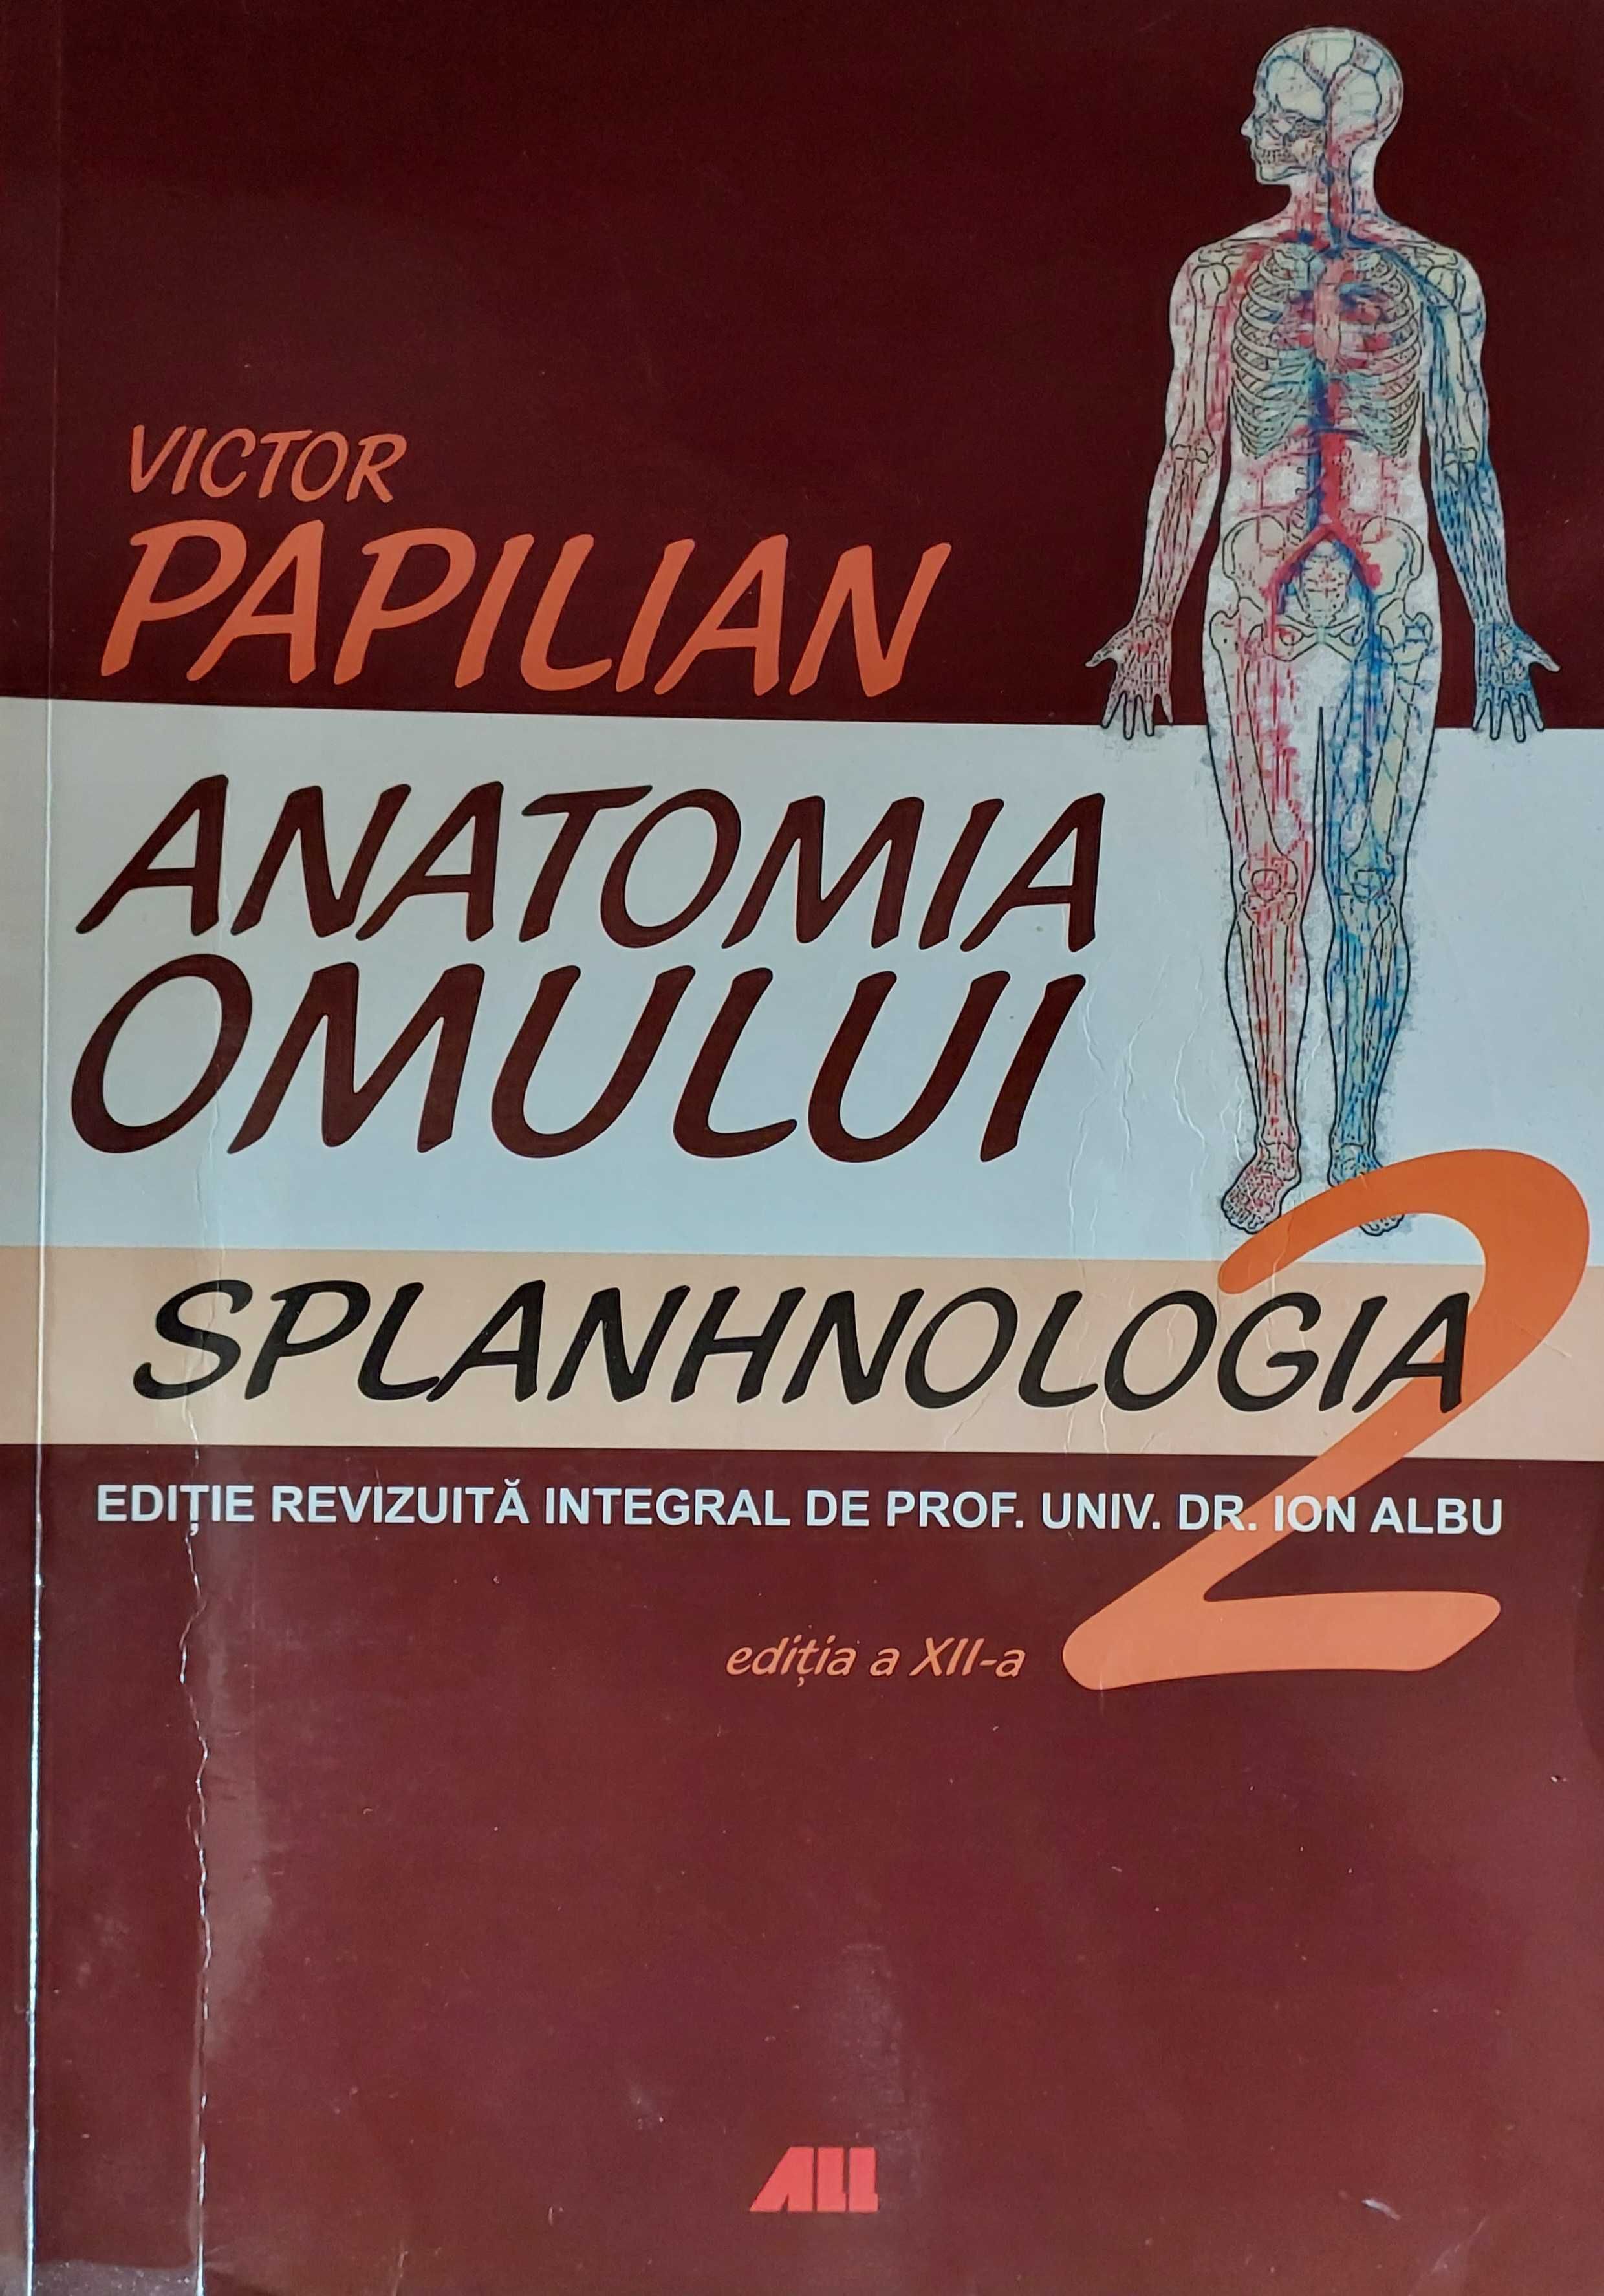 Anatomia omului vol 2 Papilian